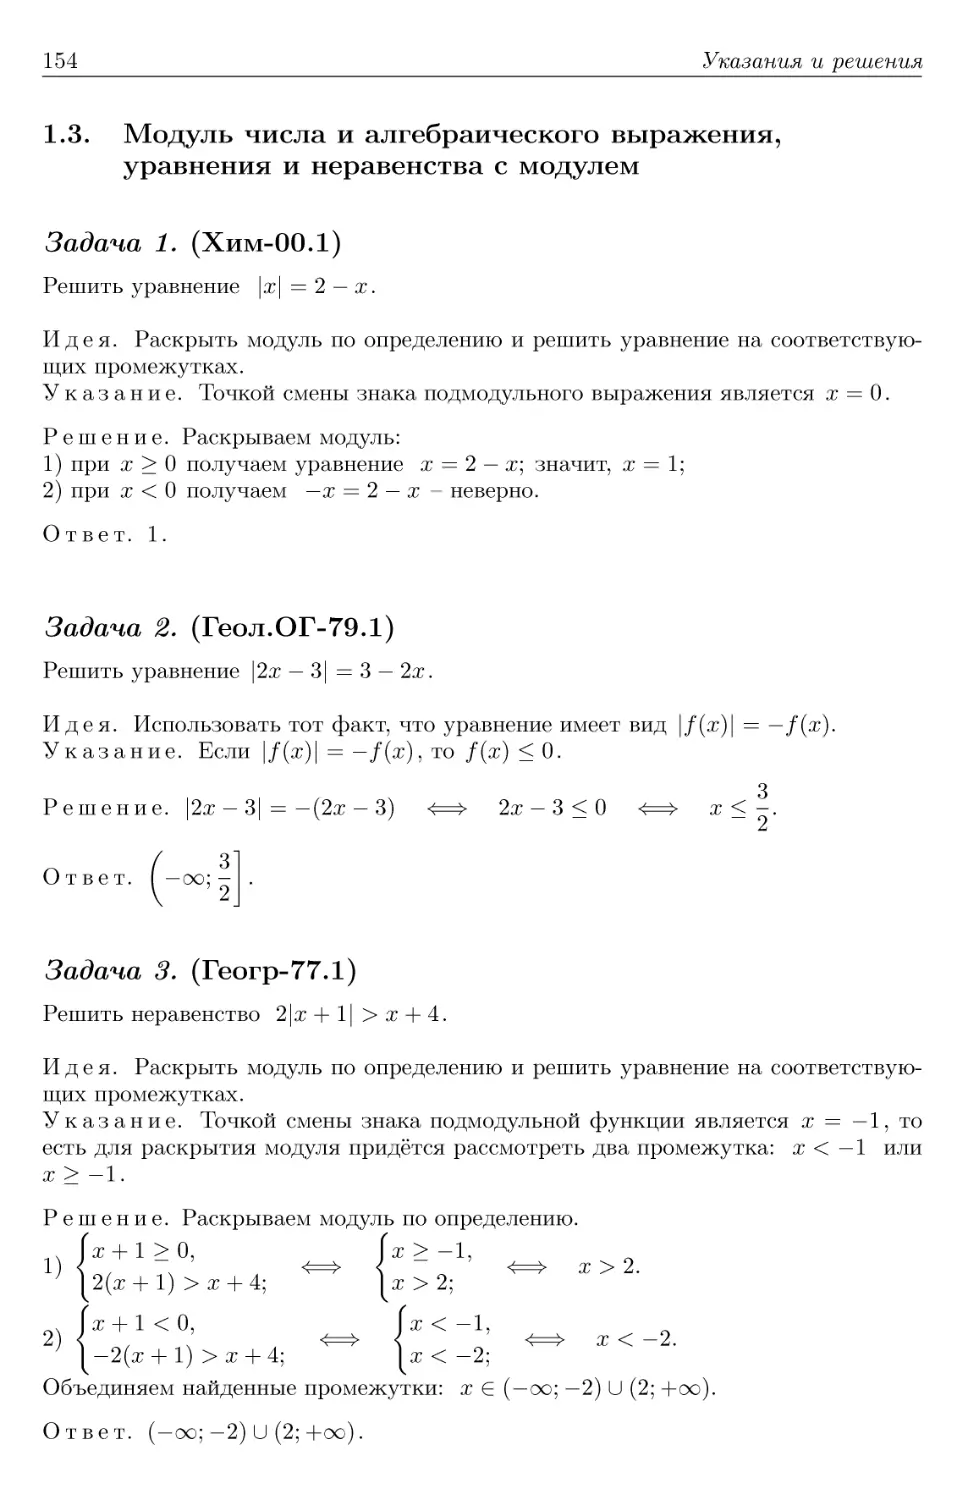 1.3. Модуль числа и алгебраического выражения, уравнения и неравенства с модулем